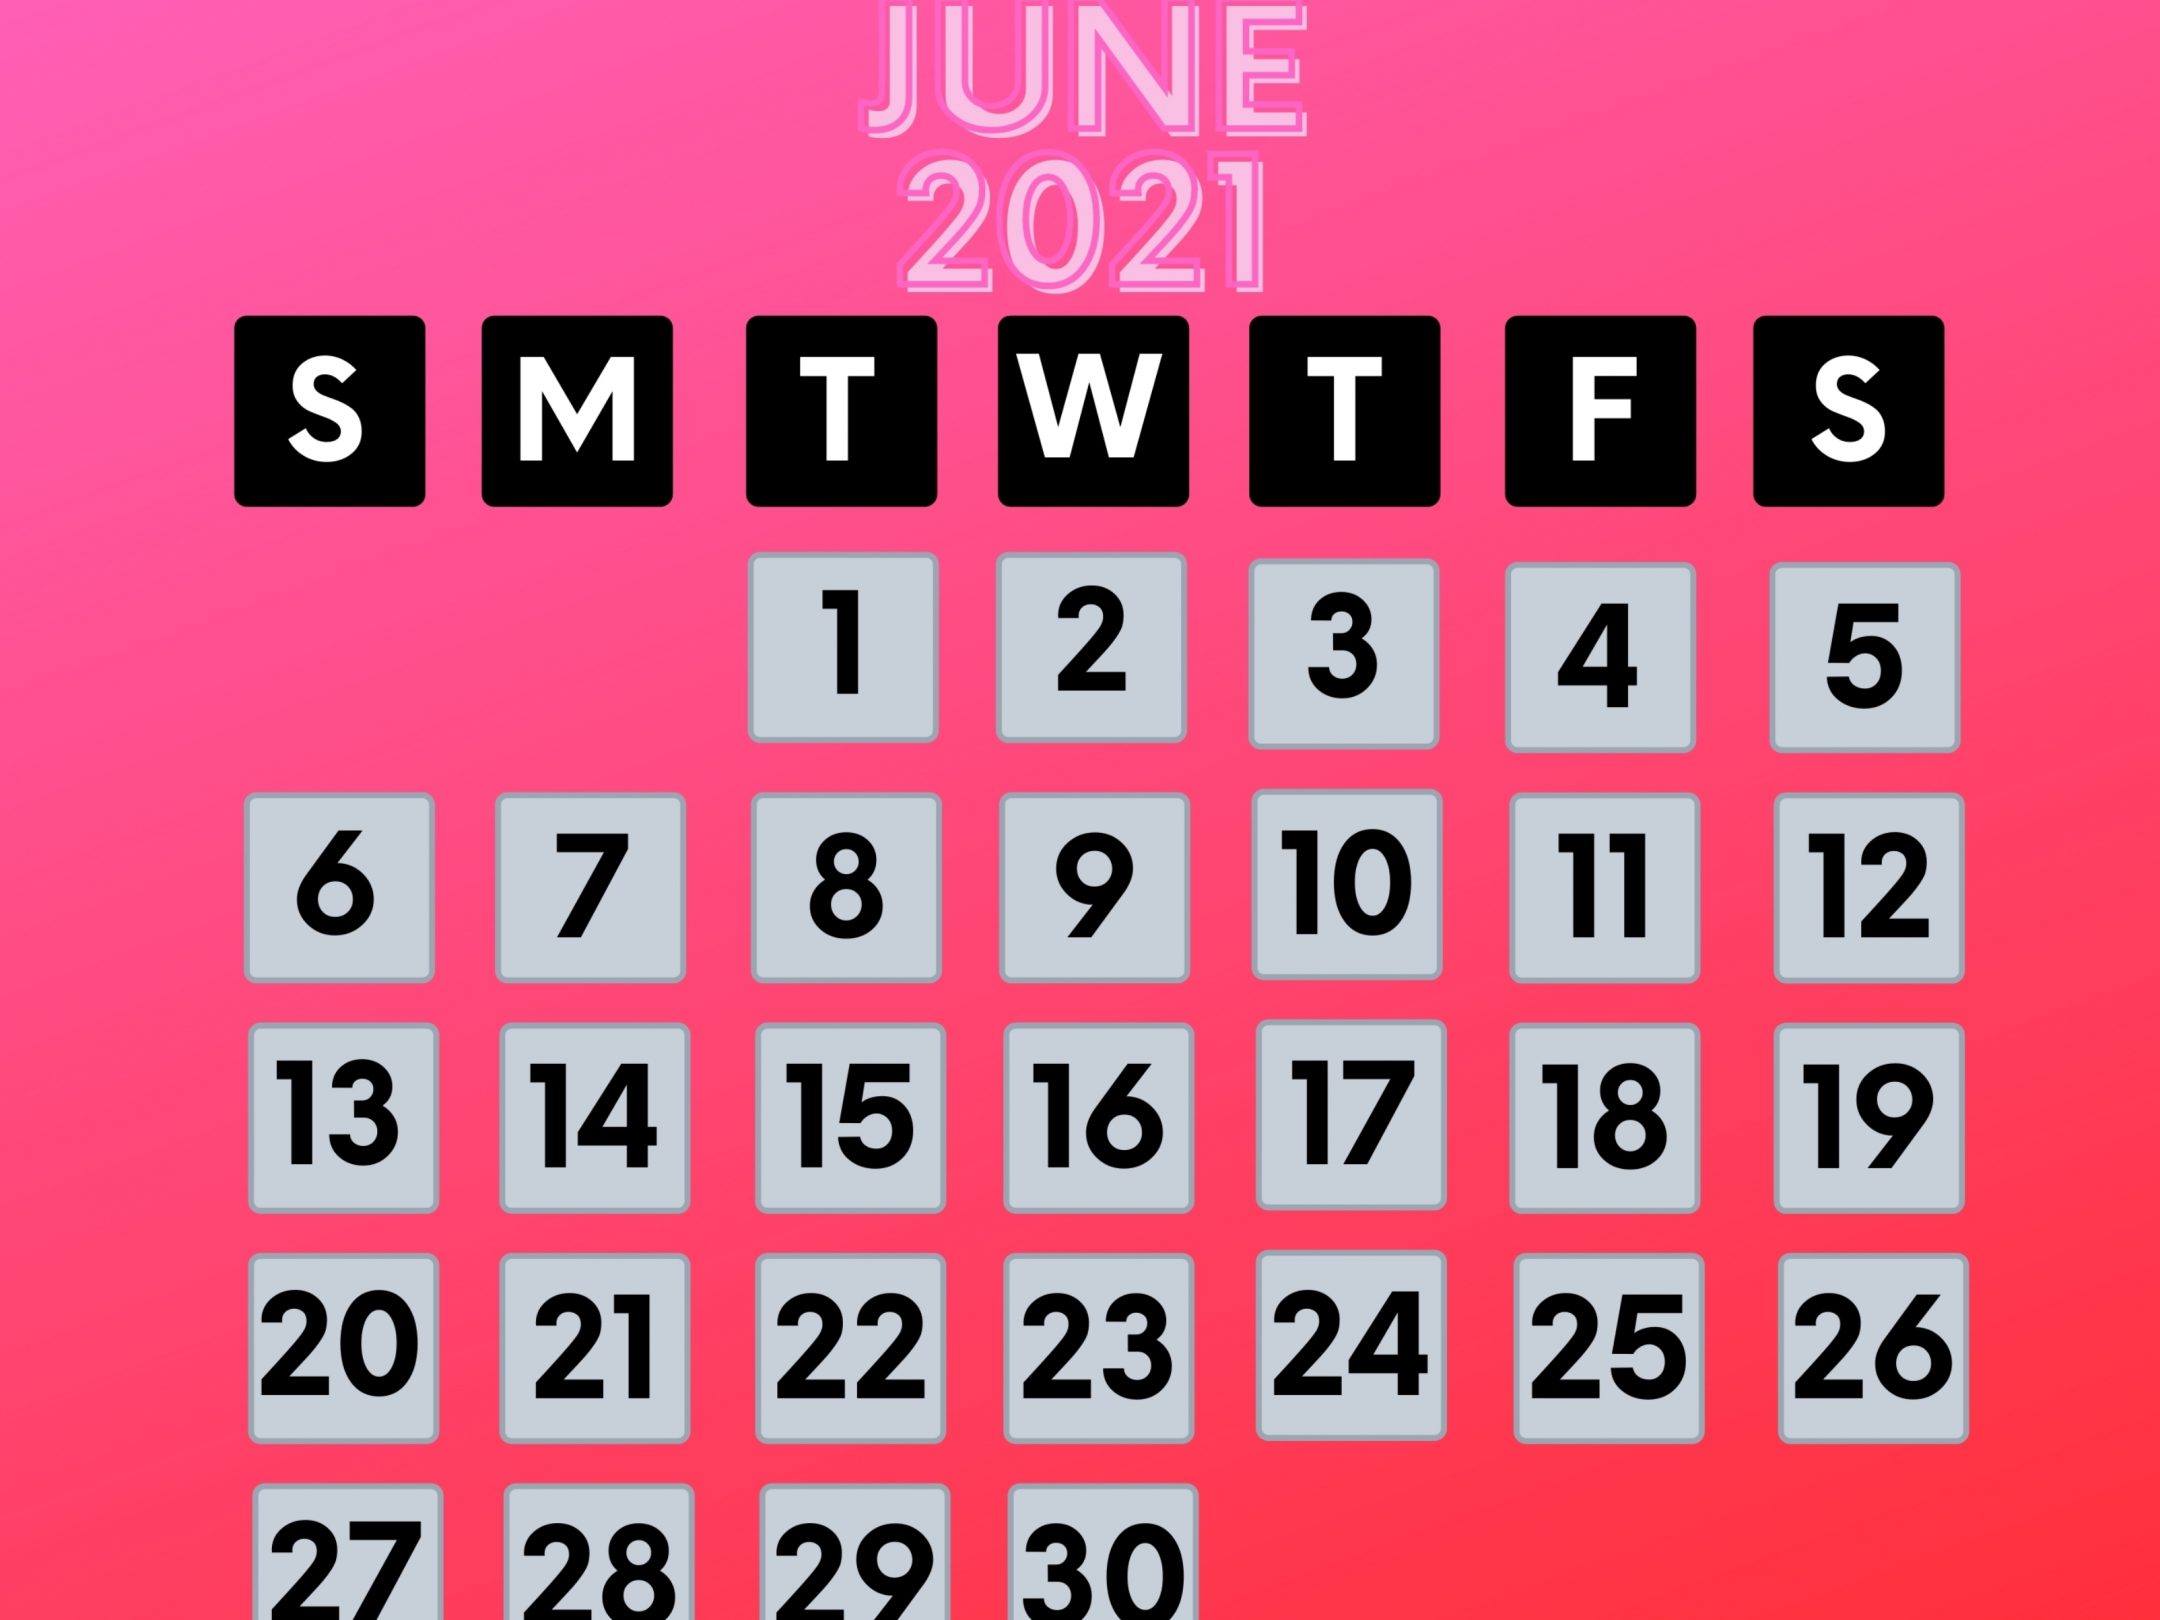 2160x1620 iPad wallpaper 4k June 2021 Calendar iPad Wallpaper 2160x1620 pixels resolution